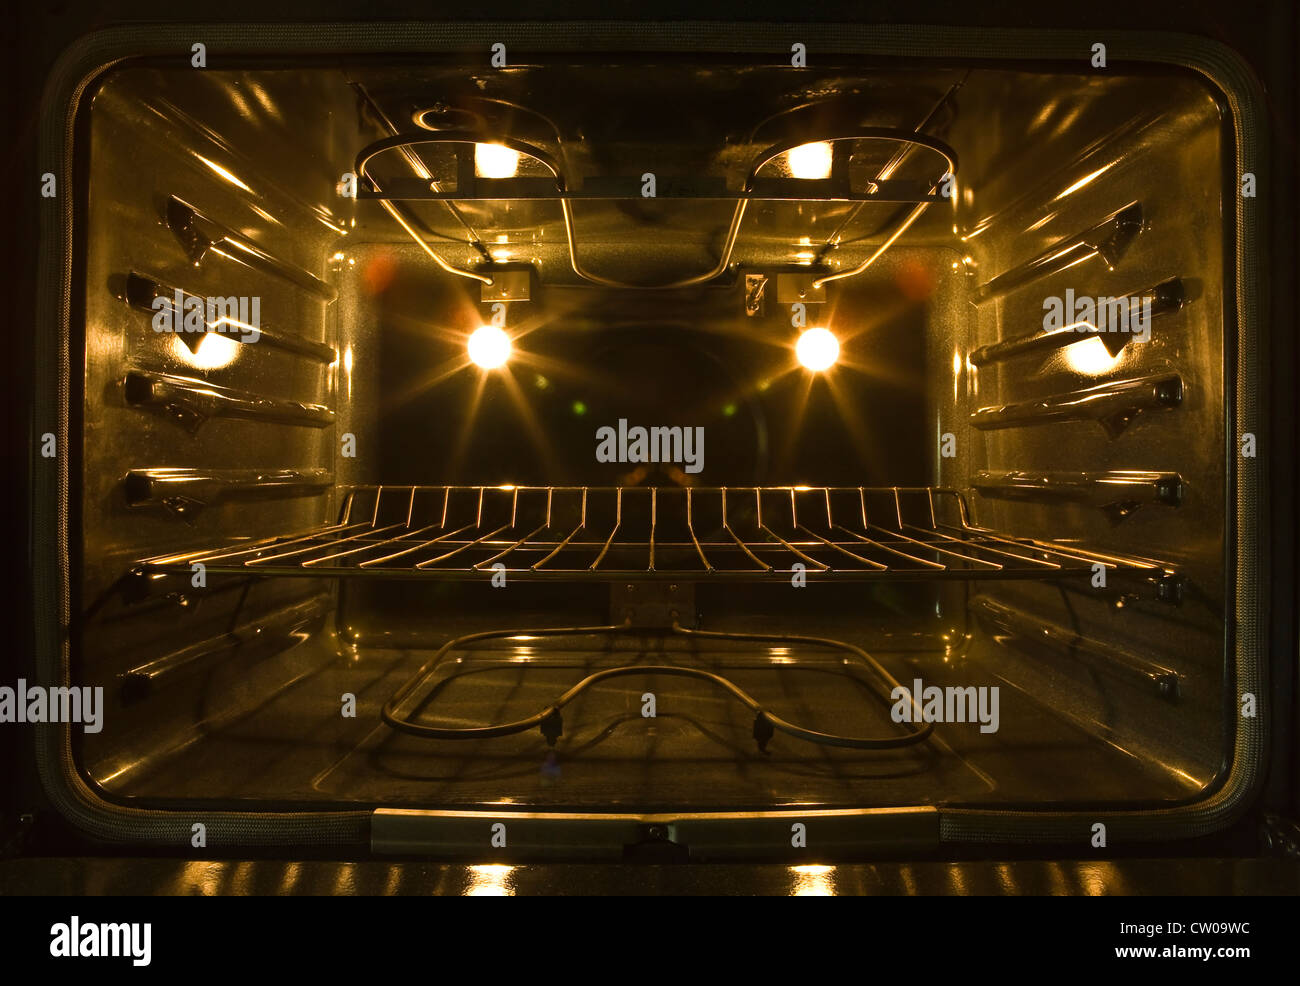 All'interno di una convezione forno elettrico che mostra le bobine di riscaldamento, forno luci, e ripiano di cottura. Foto Stock